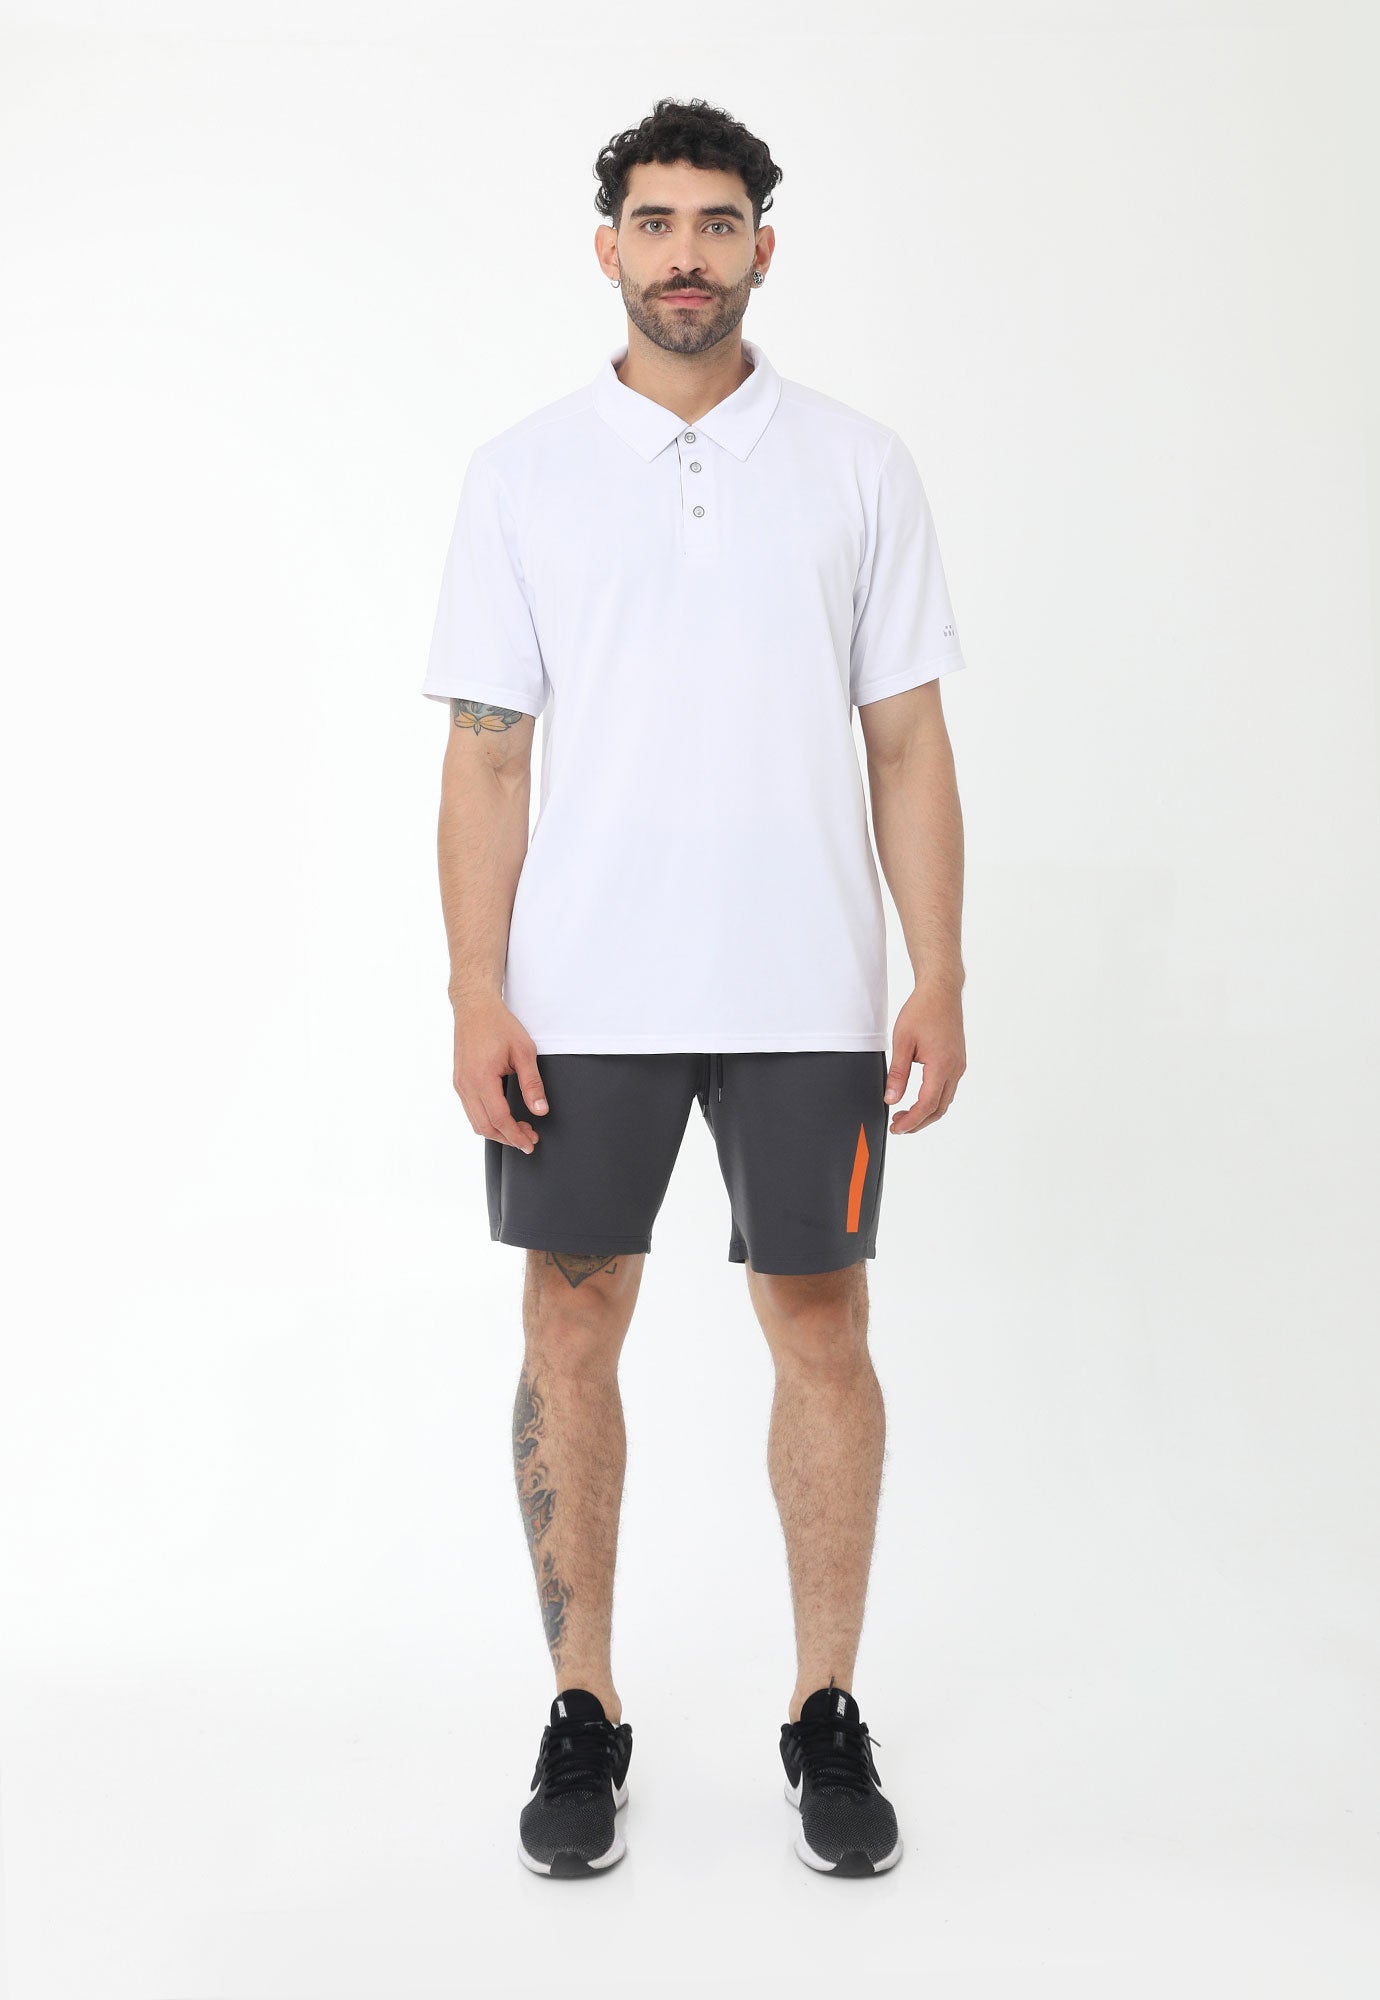 Pantaloneta deportiva gris detalle reflectivo, cintura con elástico y cordón ajustable para hombre